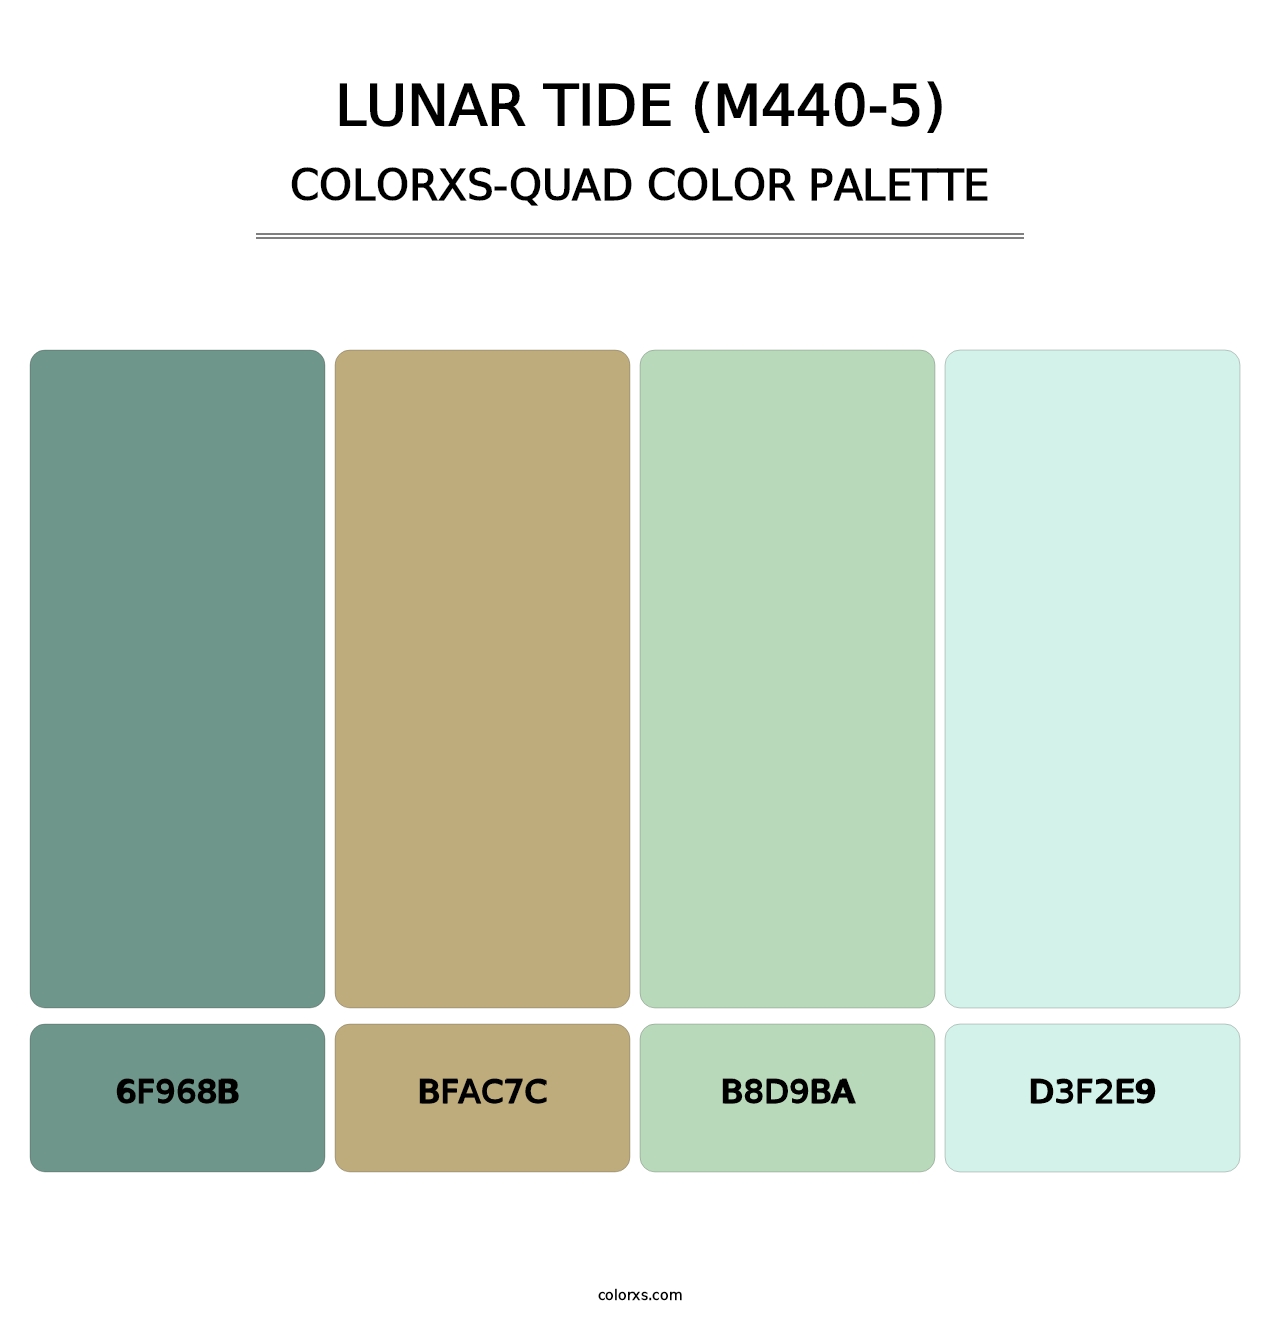 Lunar Tide (M440-5) - Colorxs Quad Palette